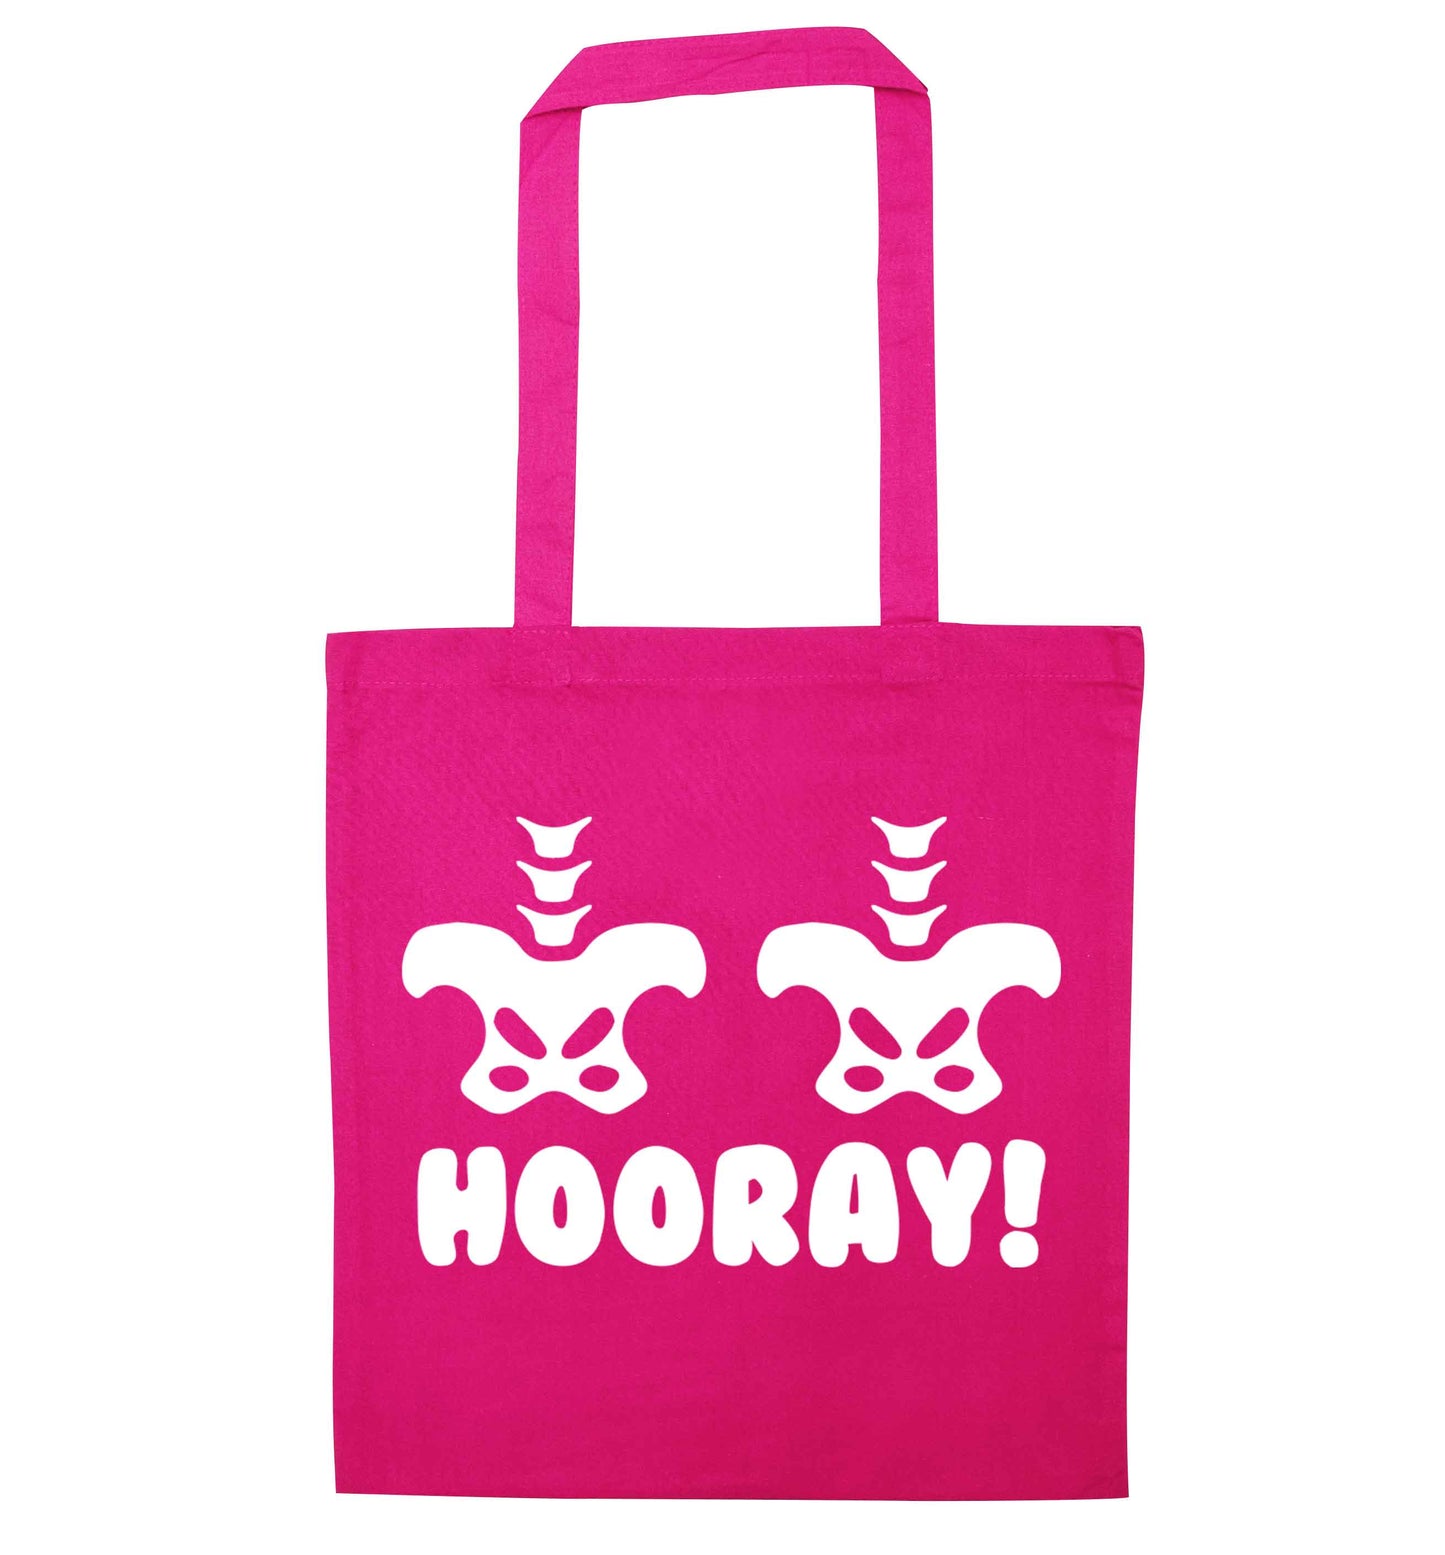 Hip Hip Hooray! pink tote bag